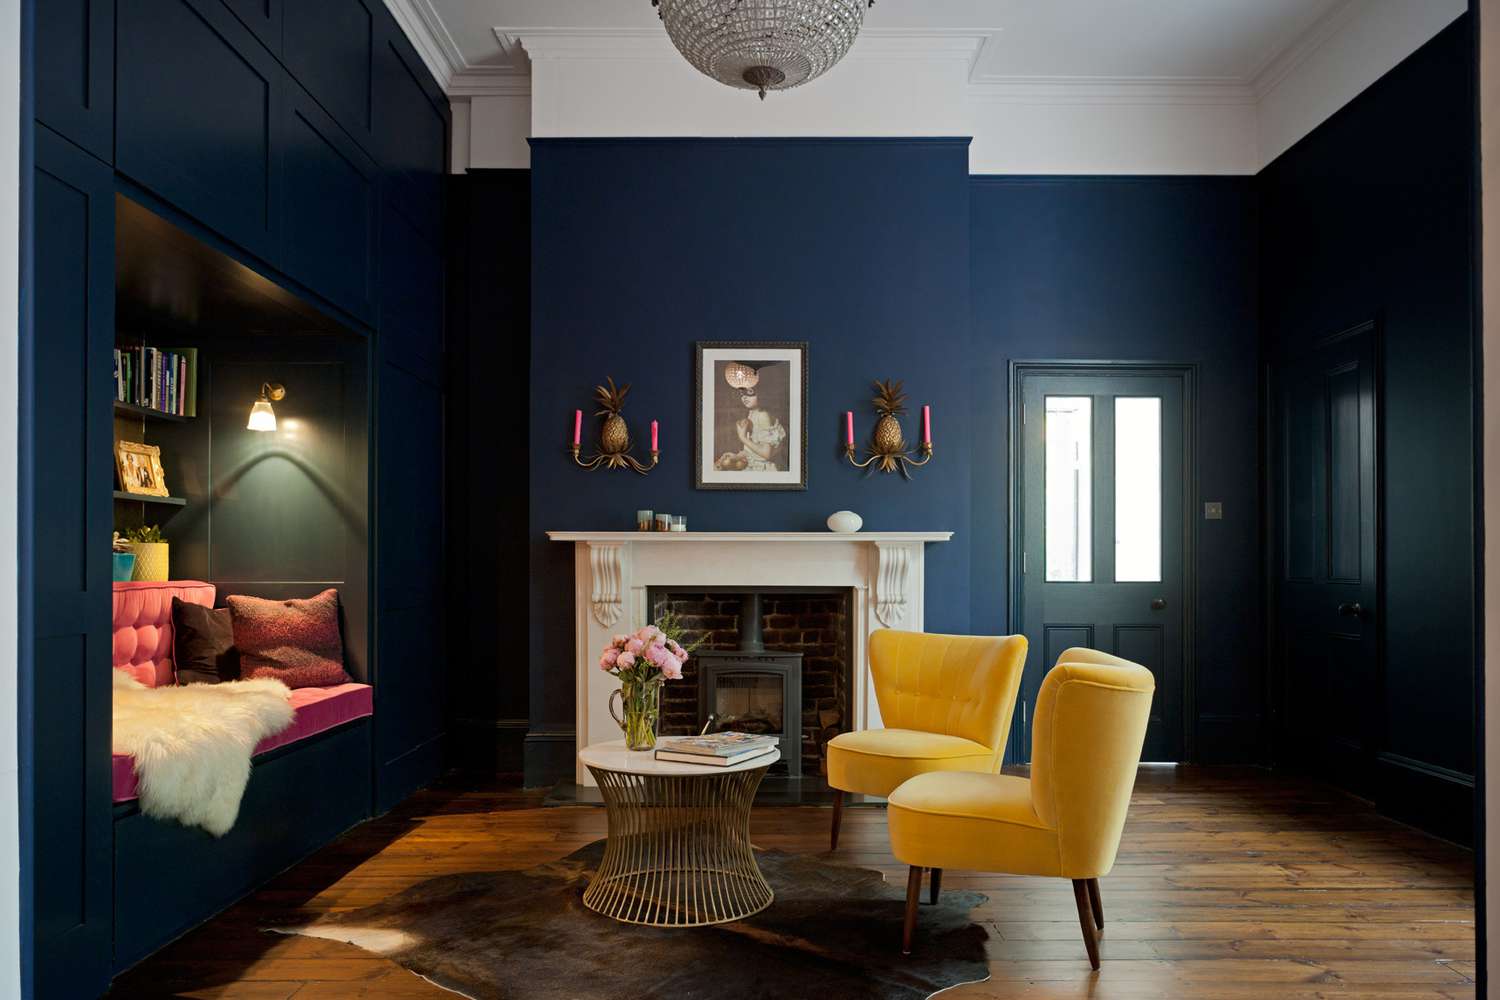 Sala de estar azul arrojada com detalhes em amarelo e rosa